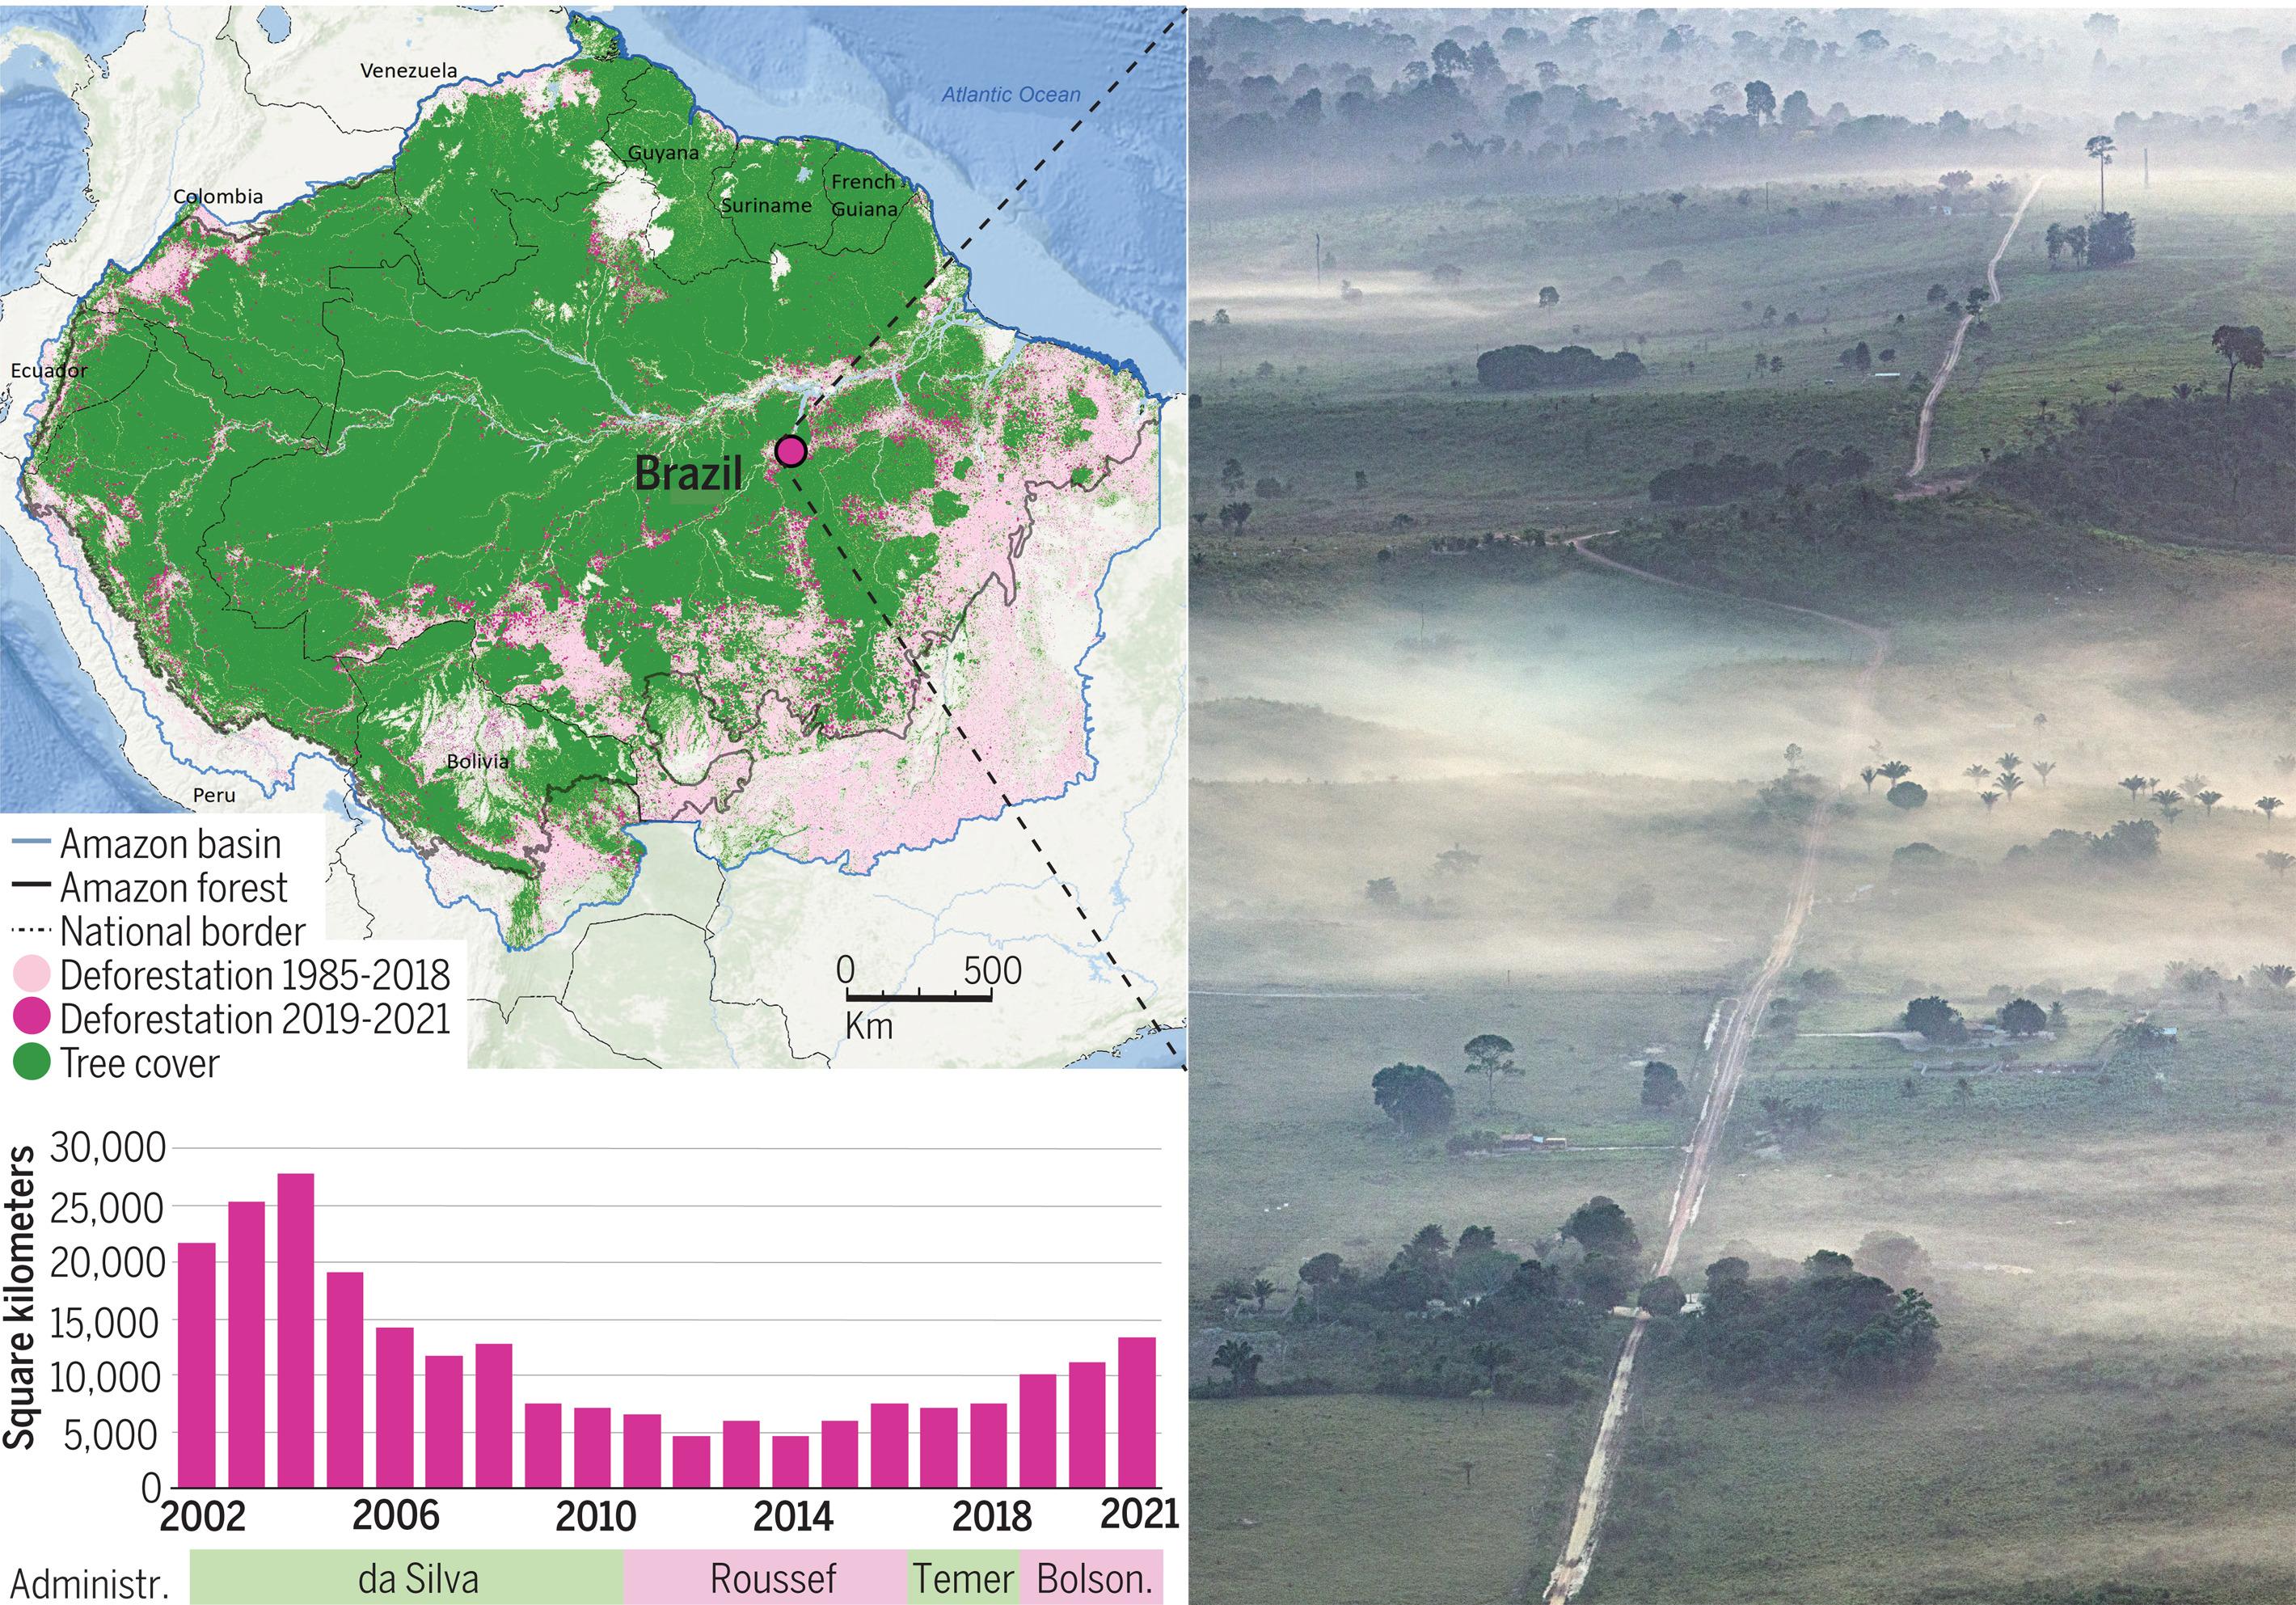 En haut à gauche: Carte de l'Amazonie indiquant l'emplacement des incendies de forêt, de 1985 à 2021. À droite: Forêt primaire récemment brûlée près de Rurópolis, État du Pará, Brésil, 17 septembre 2020. En bas à gauche: Le taux de déforestation en Amazonie brésilienne est en rapide augmentation dans le cadre des politiques environnementales de l'administration Bolsonaro. Après des millions d'années à servir d'immense réservoir mondial de carbone, la forêt amazonienne devient une source nette de carbone pour l'atmosphère. [ESRI/Garmin-GEBCO/NOAA NGDC/Science - Marizilda Cruppe/Amazonia Real]